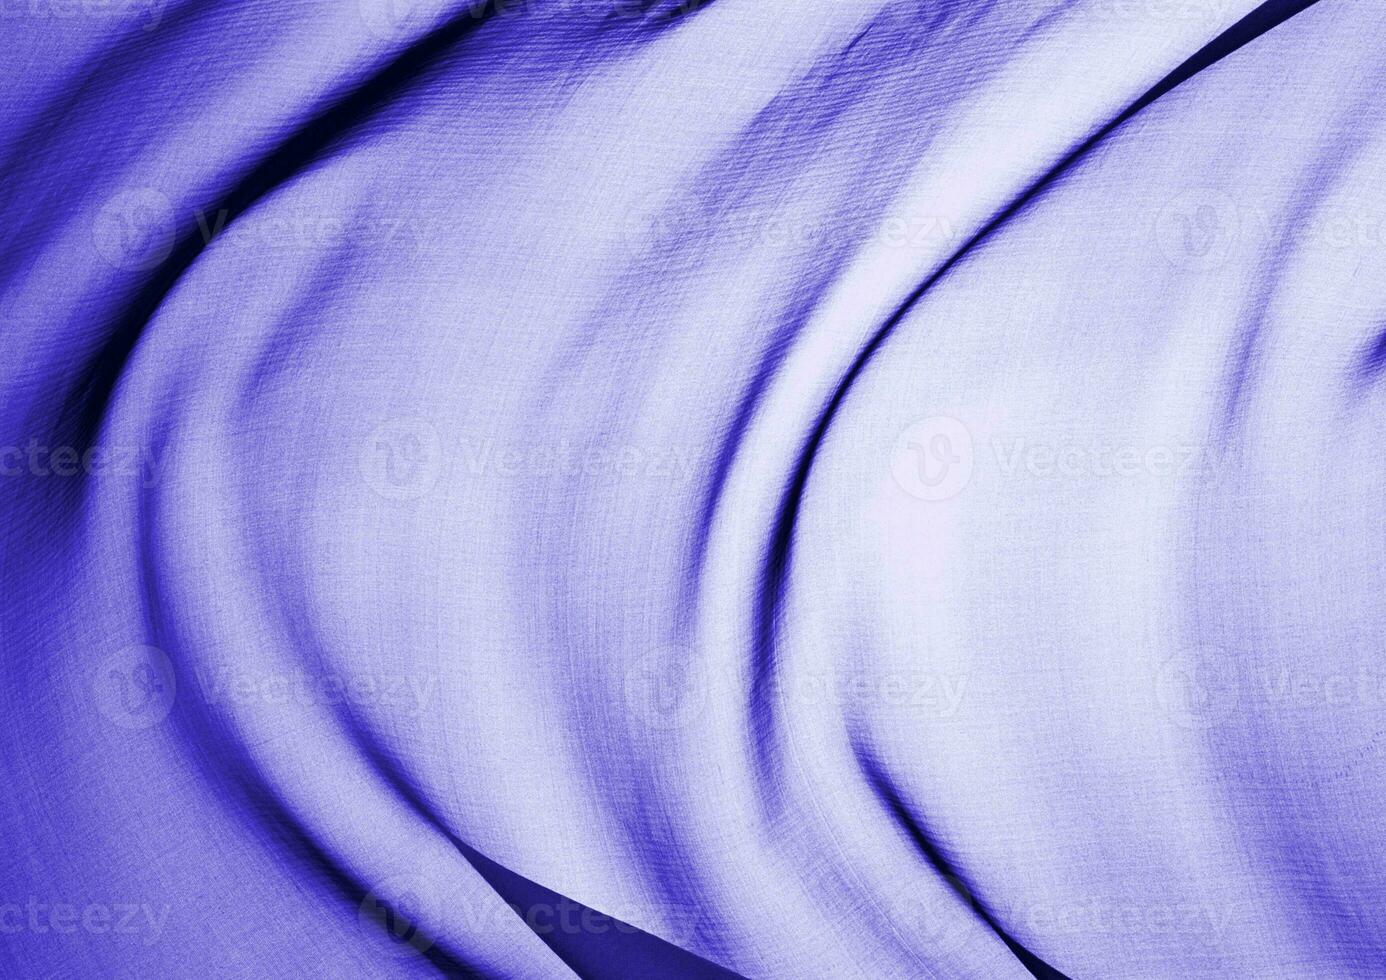 djup blå glansig trasa textur bakgrund. naturlig textil- material Foto, mönster omslag foto